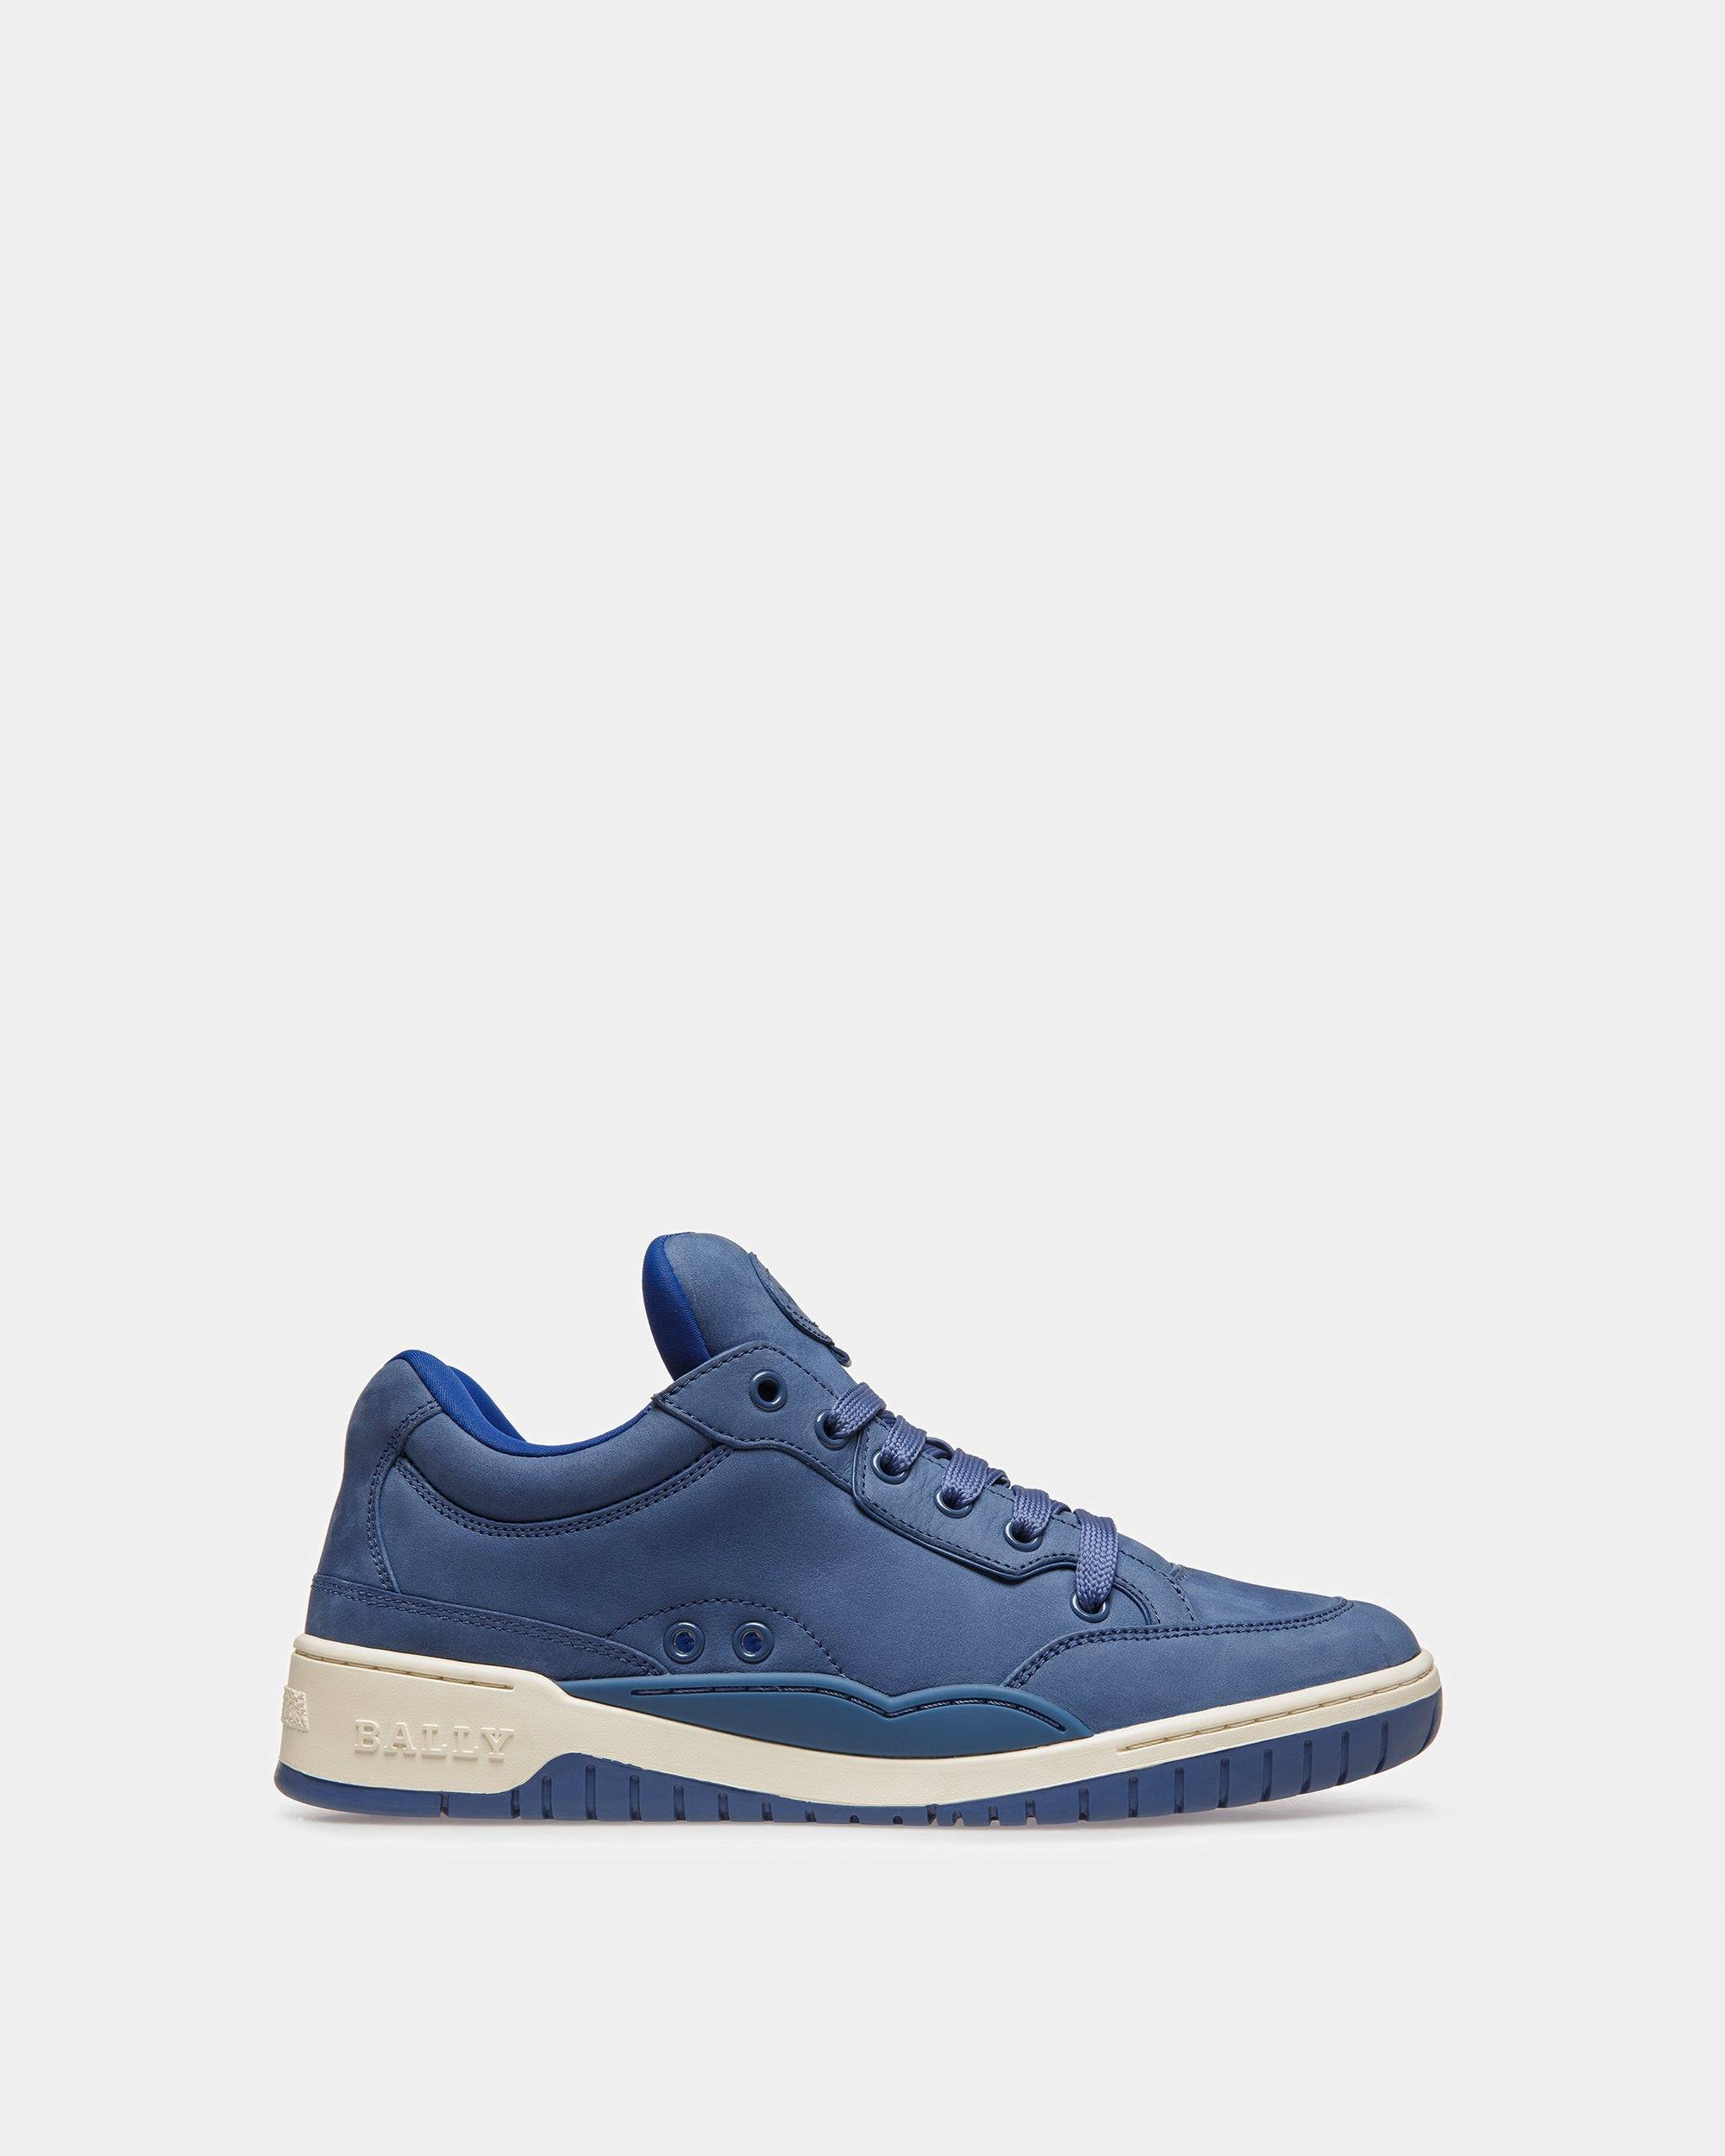 Kiro Sneaker In Pelle Blu Elettrico - Bally